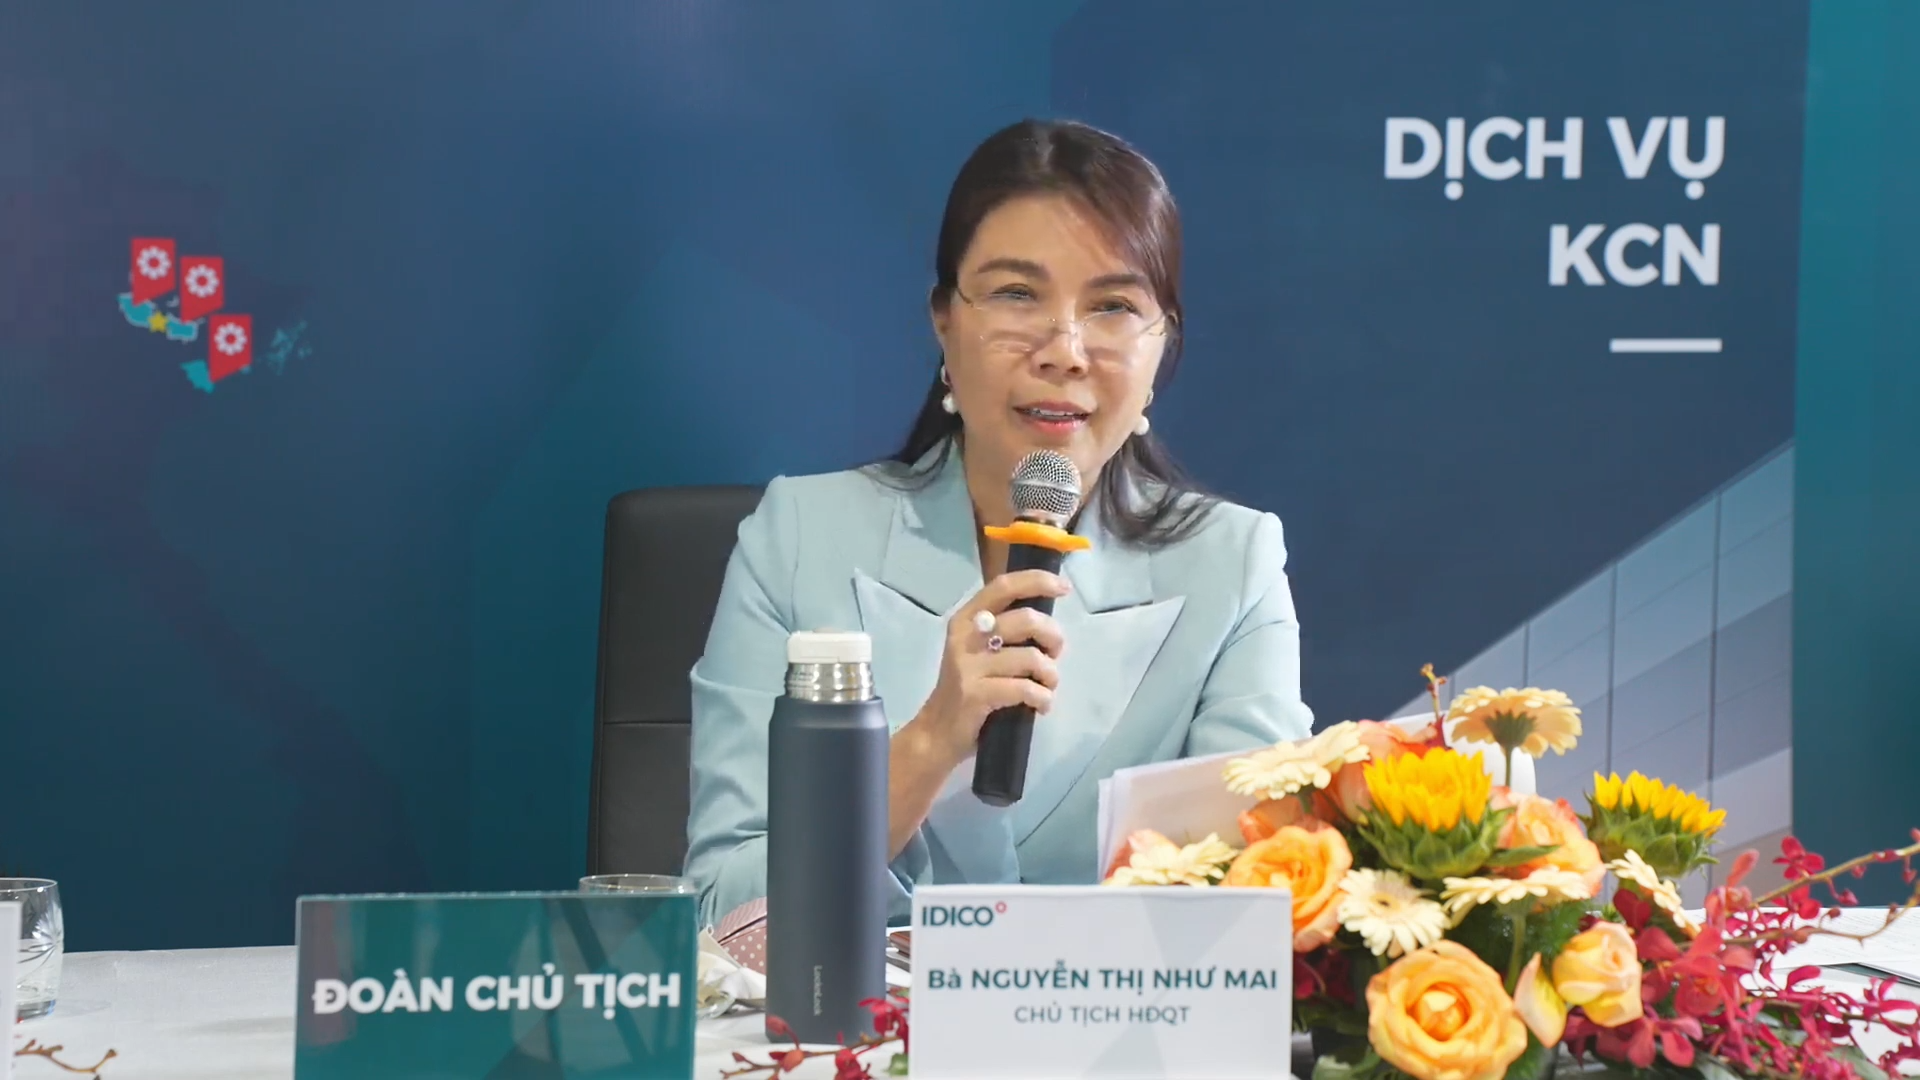 Bà Nguyễn Thị Như Mai - Chủ tịch HĐQT Idico